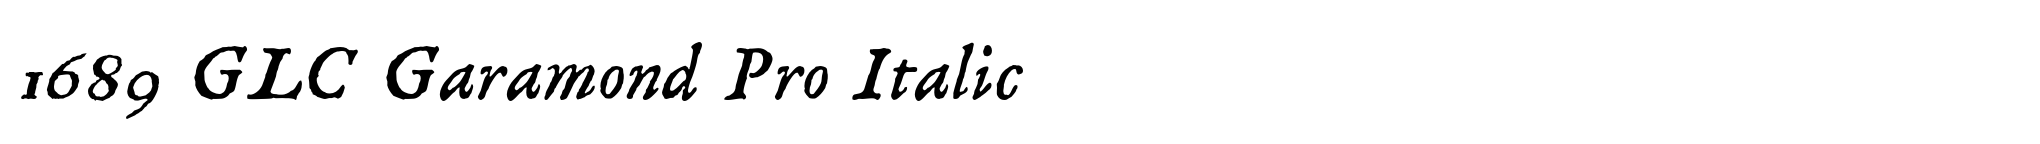 1689 GLC Garamond Pro Italic image